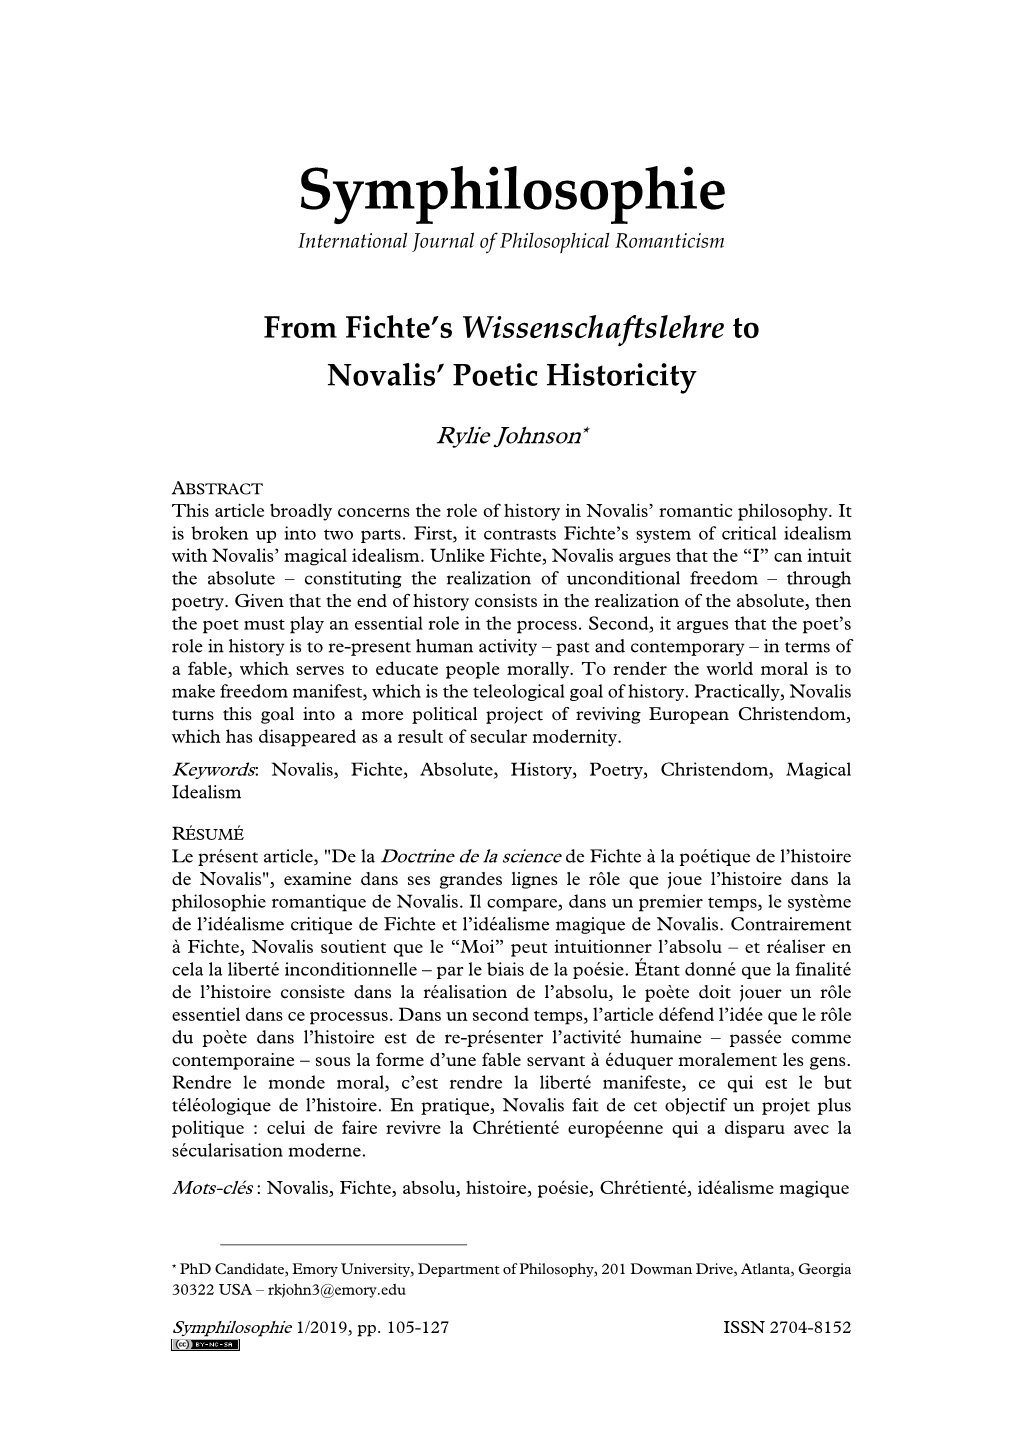 From Fichte's Wissenschaftslehre to Novalis' Poetic Historicity